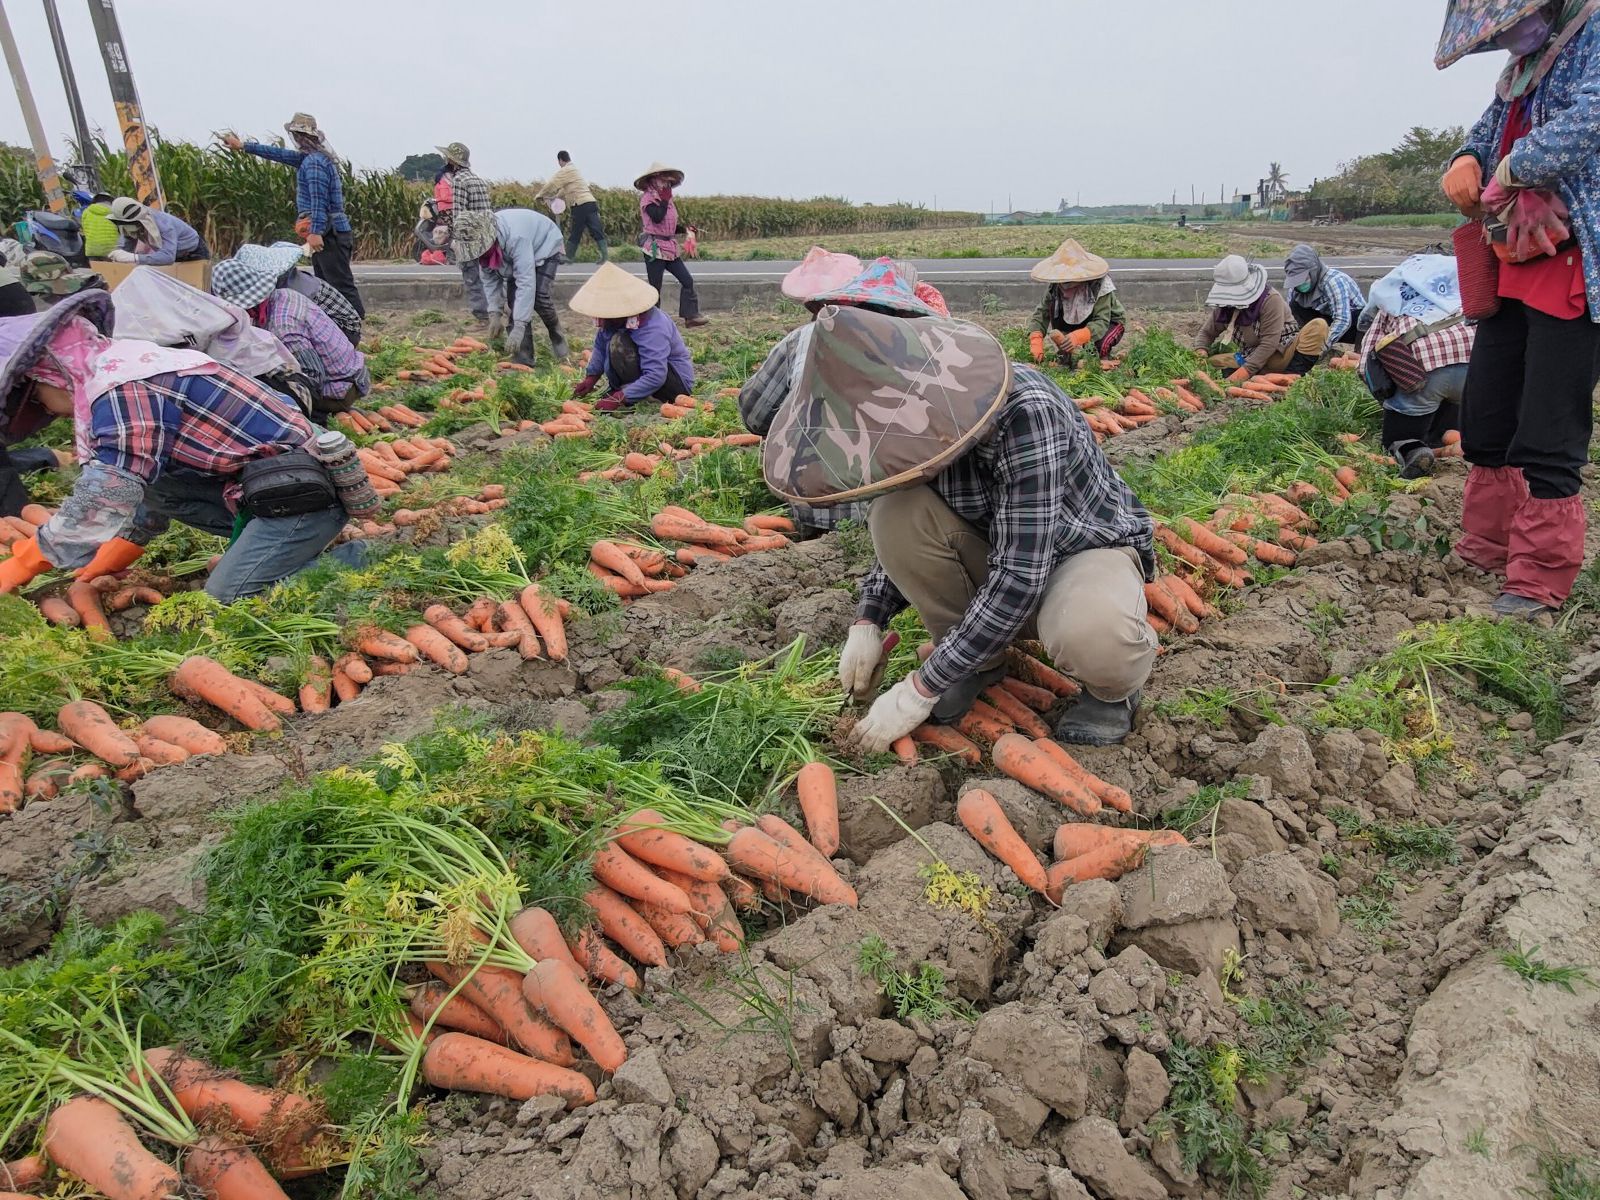 專業採收人員一把把地將胡蘿蔔拔出土面